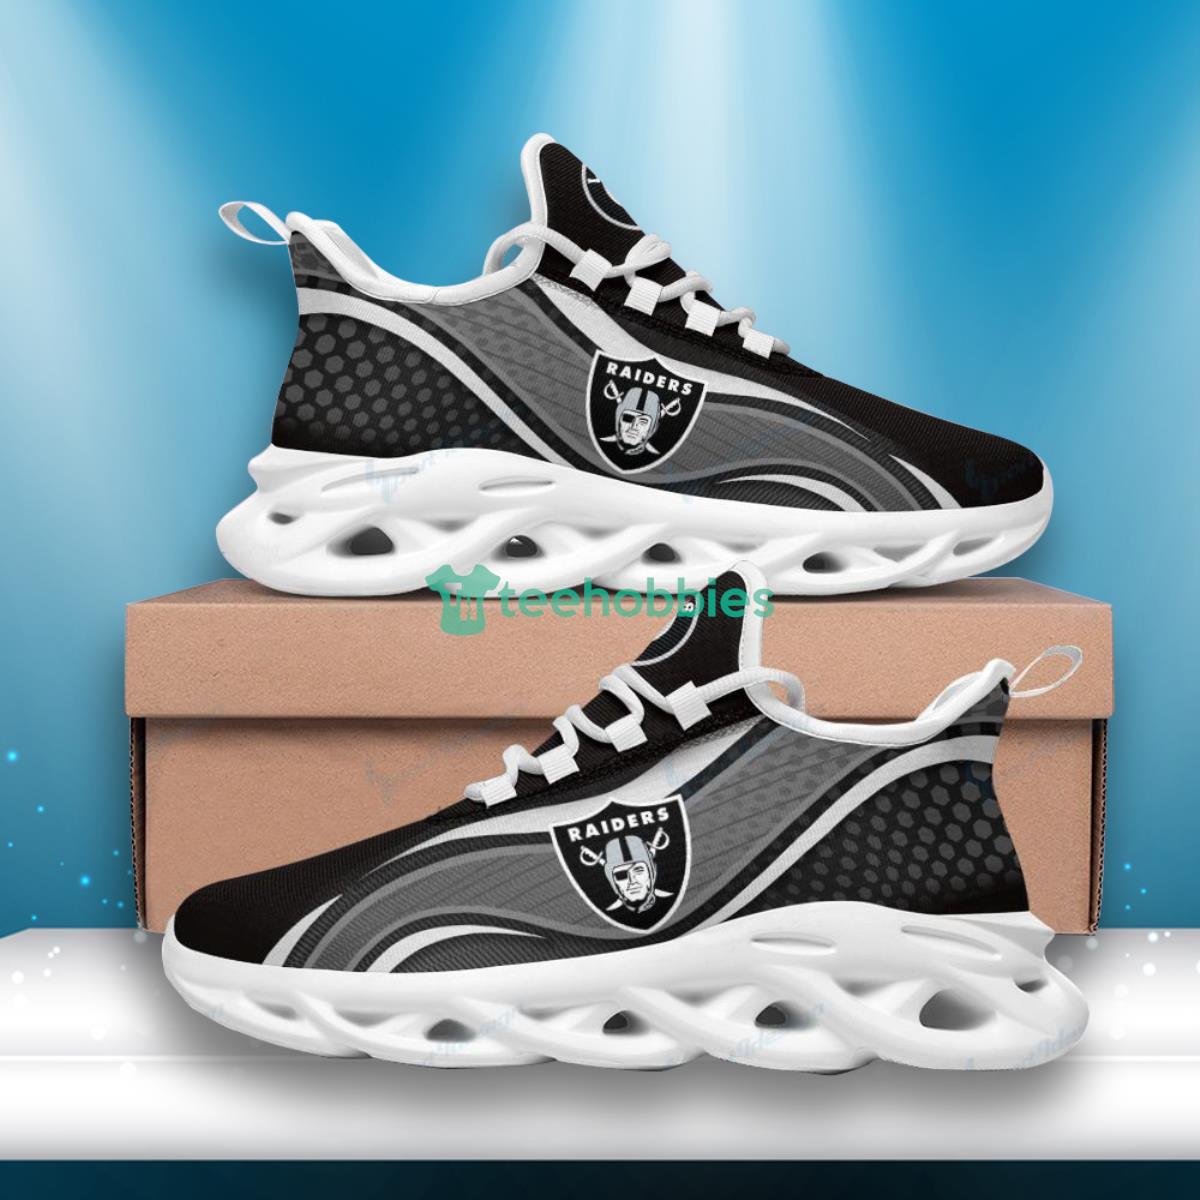 Las Vegas Raiders  Max Soul Shoes Hot Design For Fans Product Photo 2